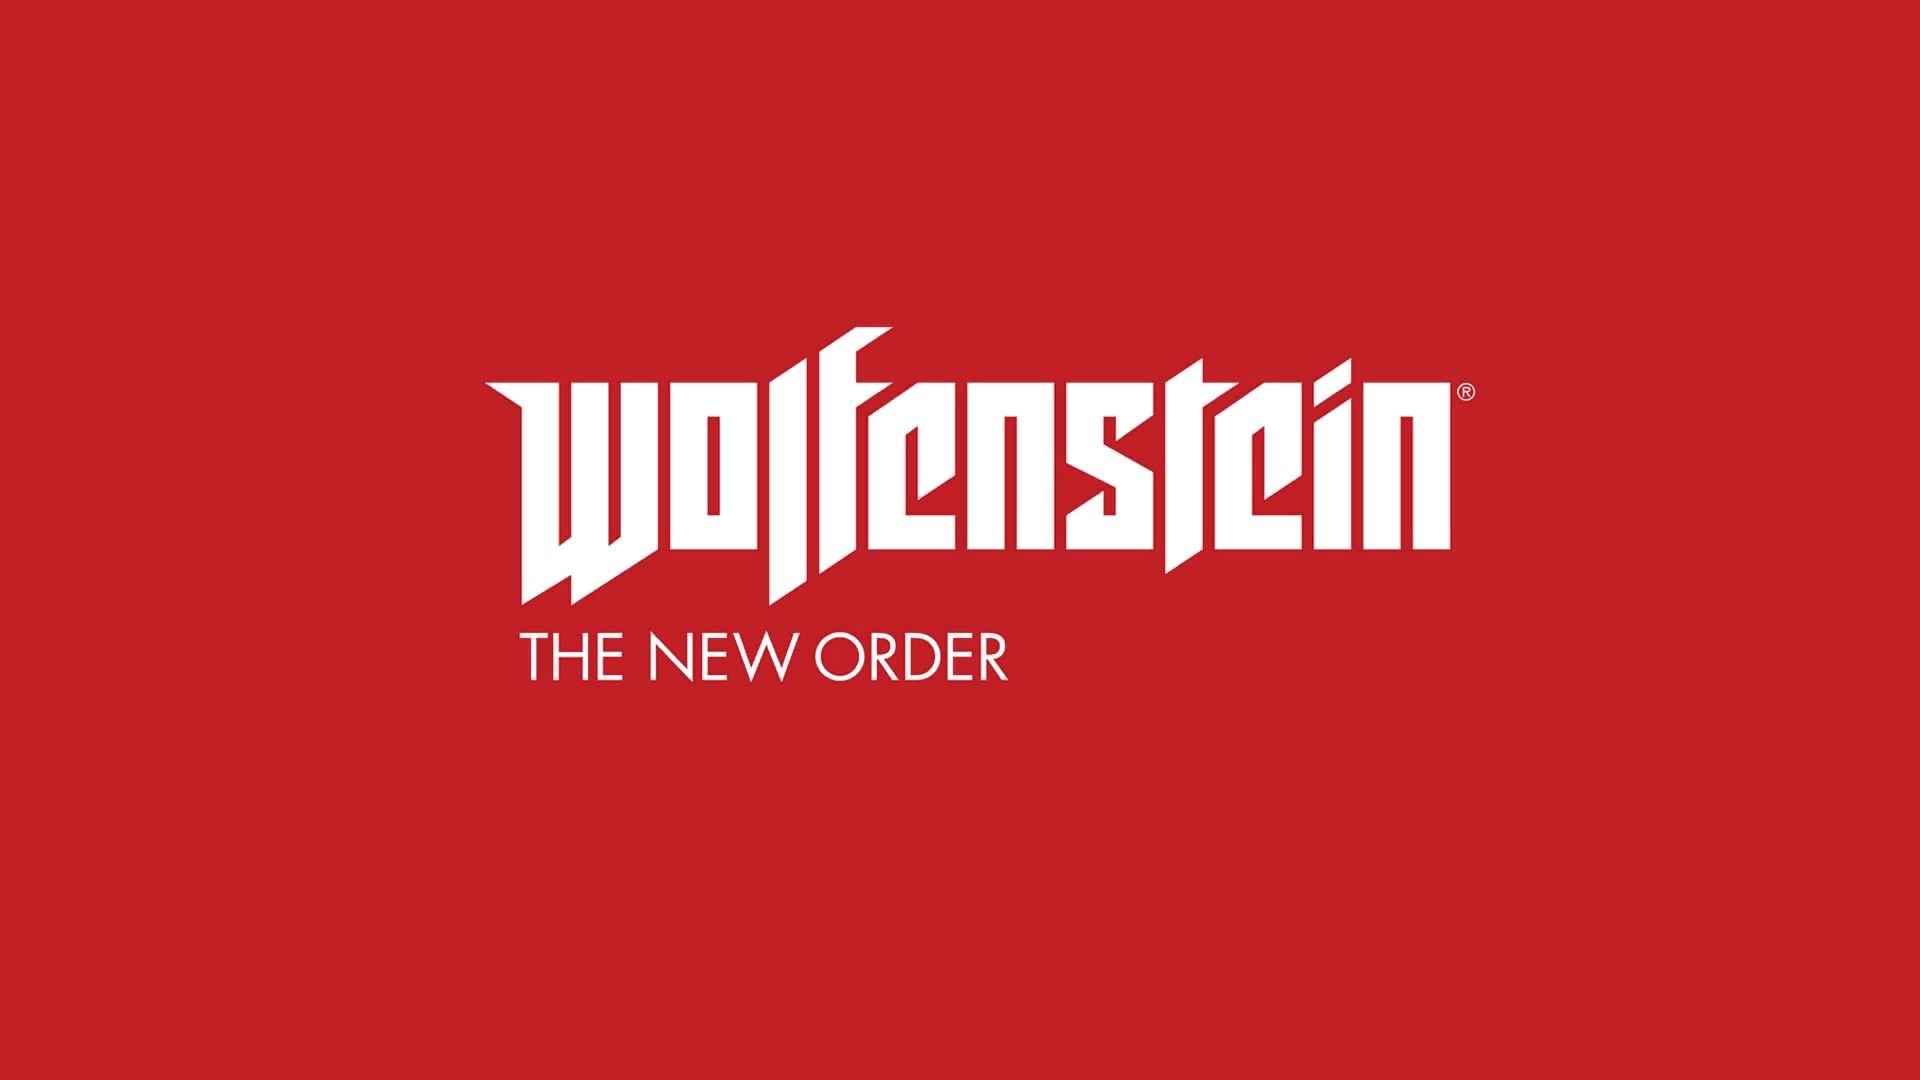 Wolfenstein: The New Order #01